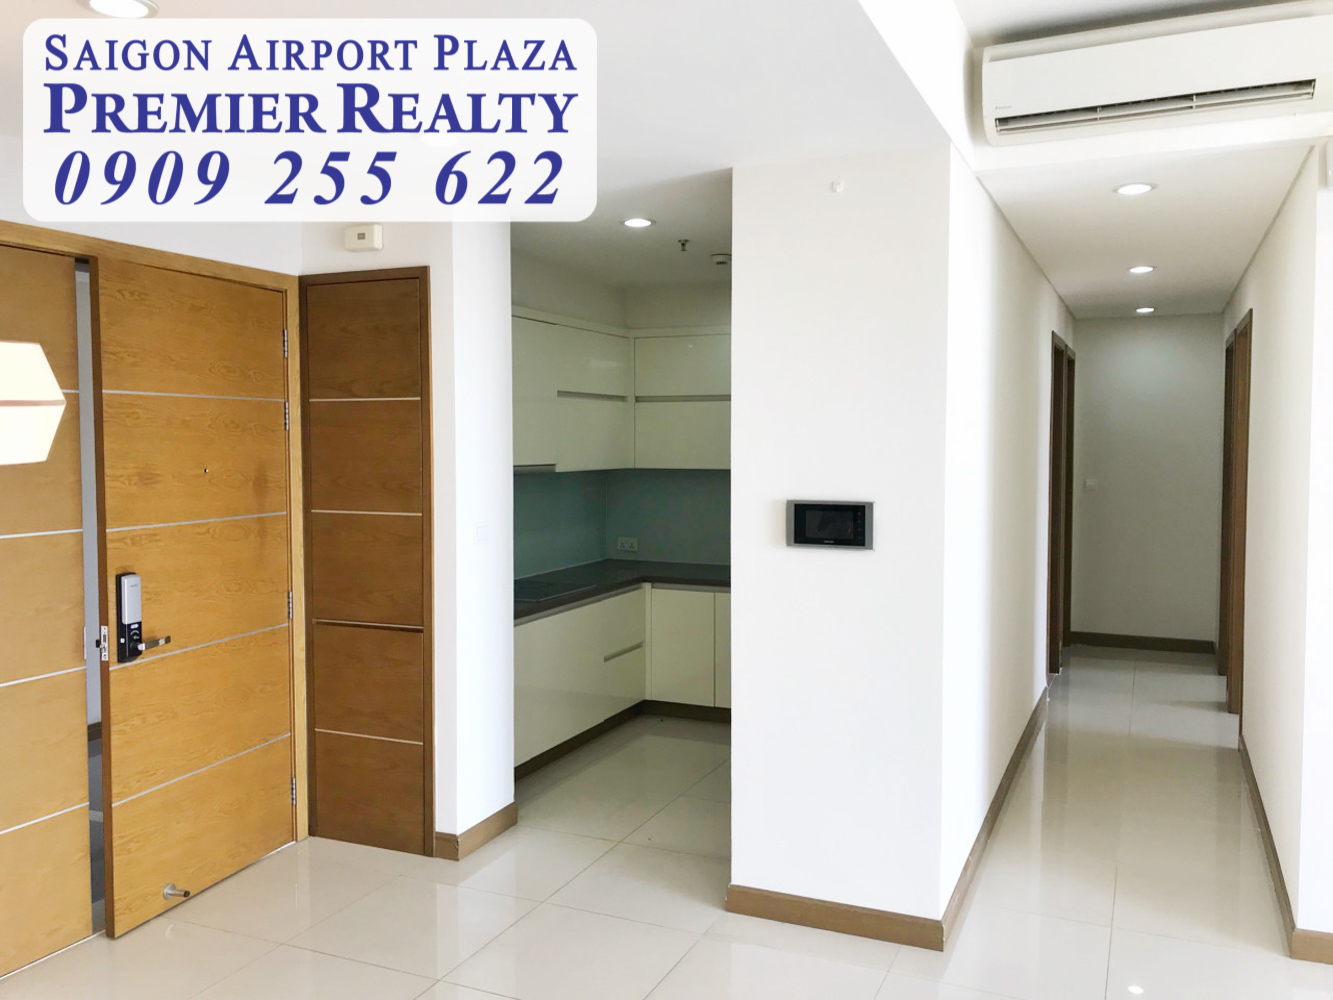 Saigon Airport Plaza - Hotline PKD 0909 255 622 – Cập nhật thường xuyên giỏ hàng 1-2-3PN, xem nhà ngay